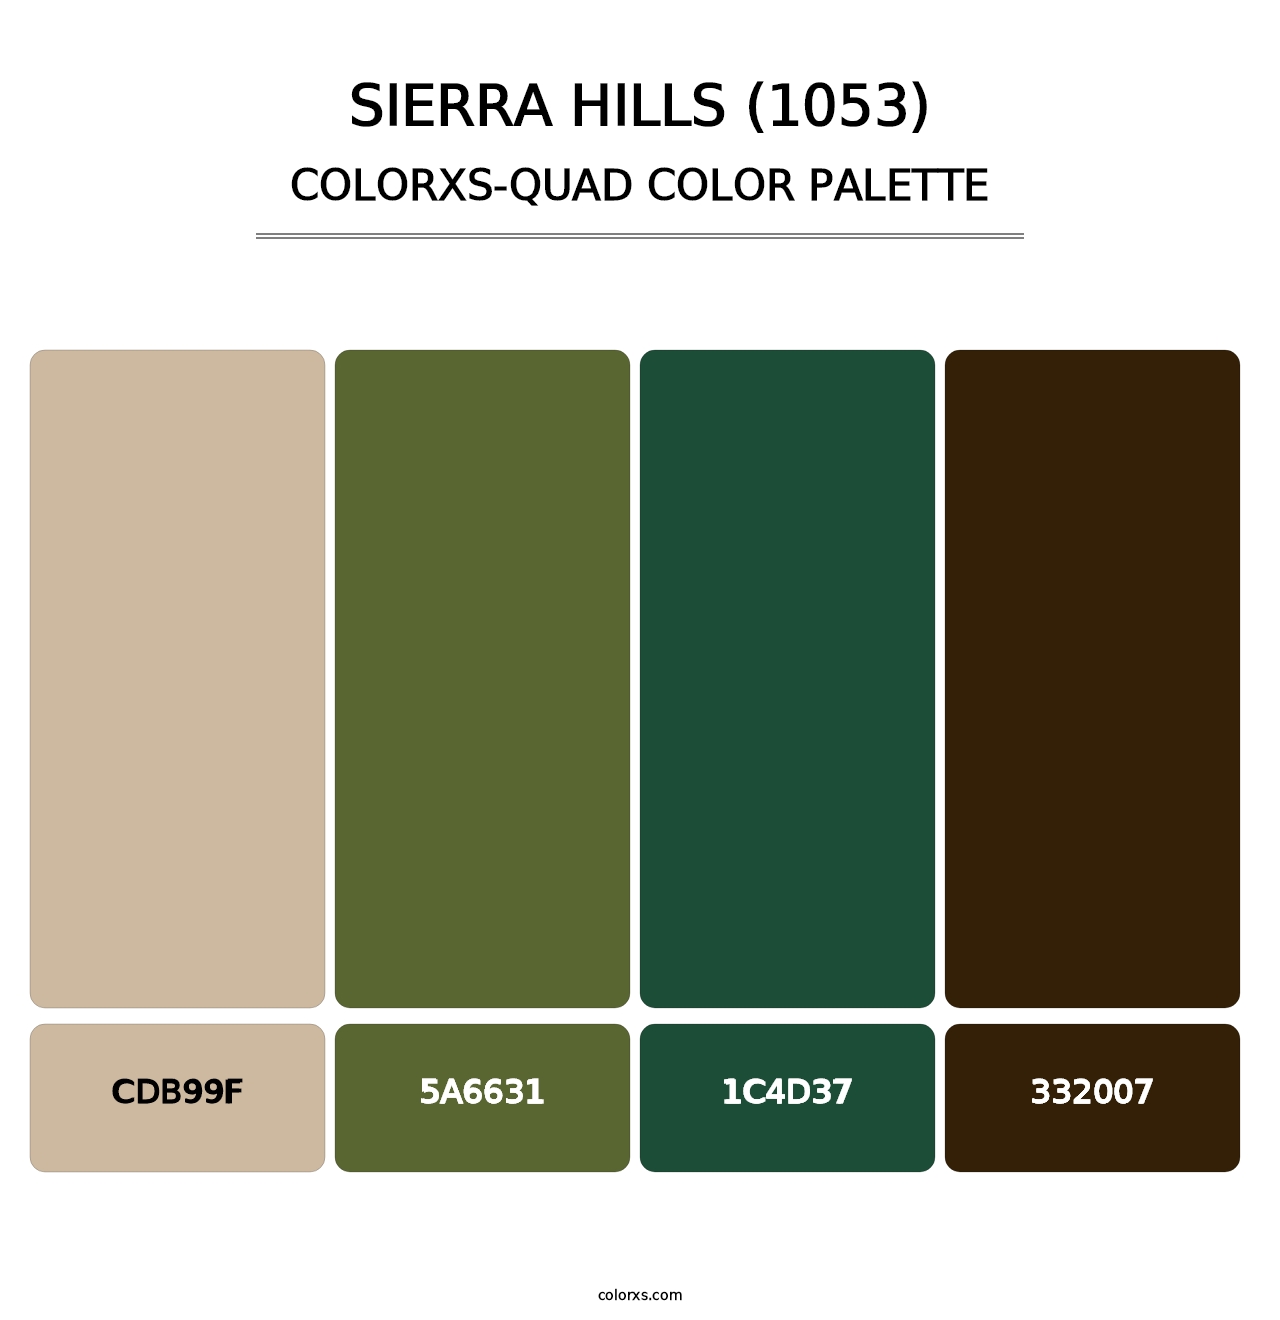 Sierra Hills (1053) - Colorxs Quad Palette